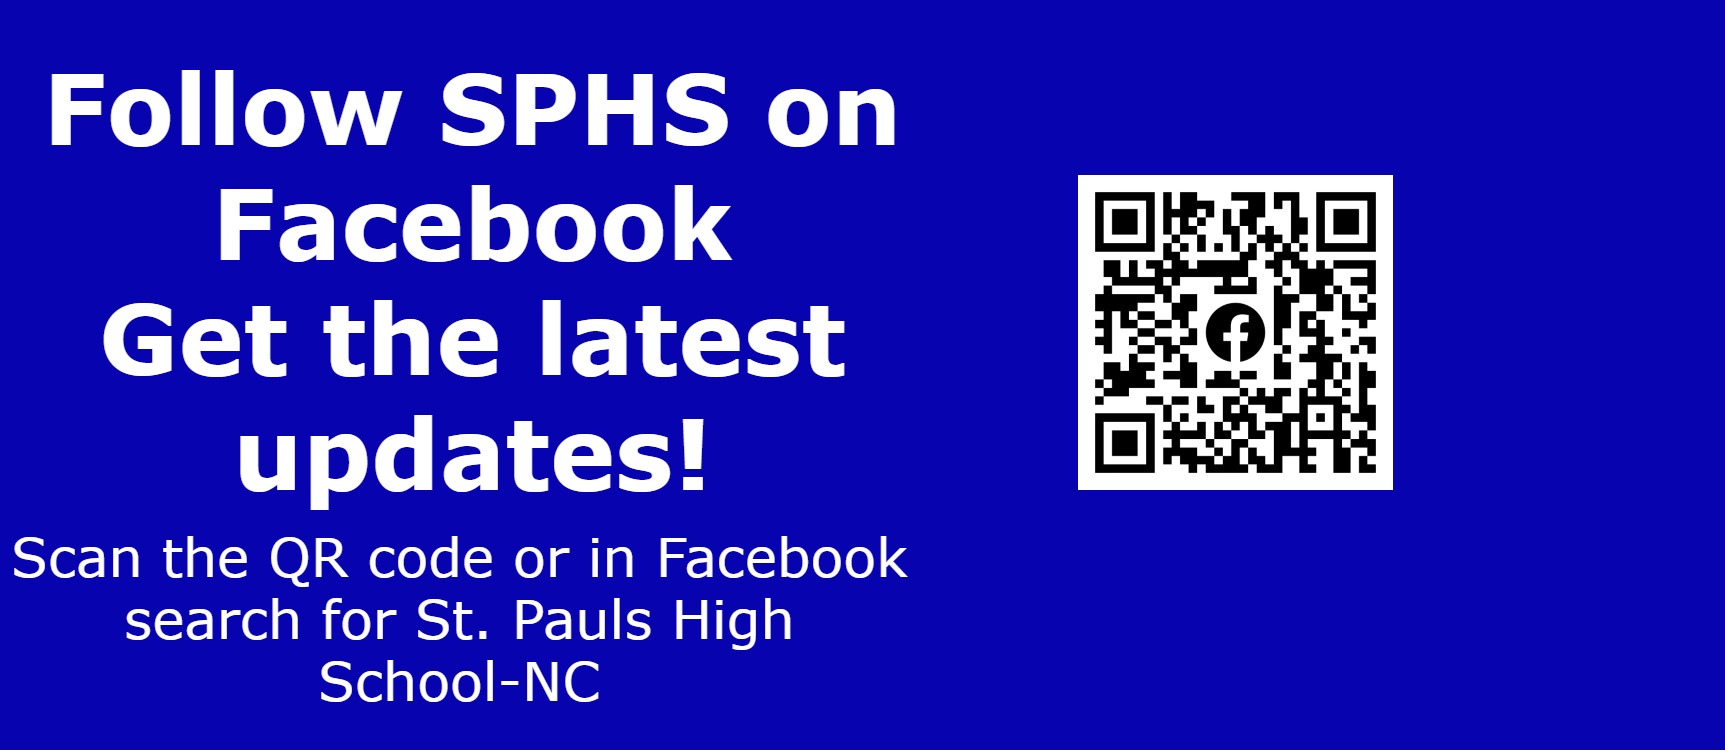 QR Code for SPHS Facebook